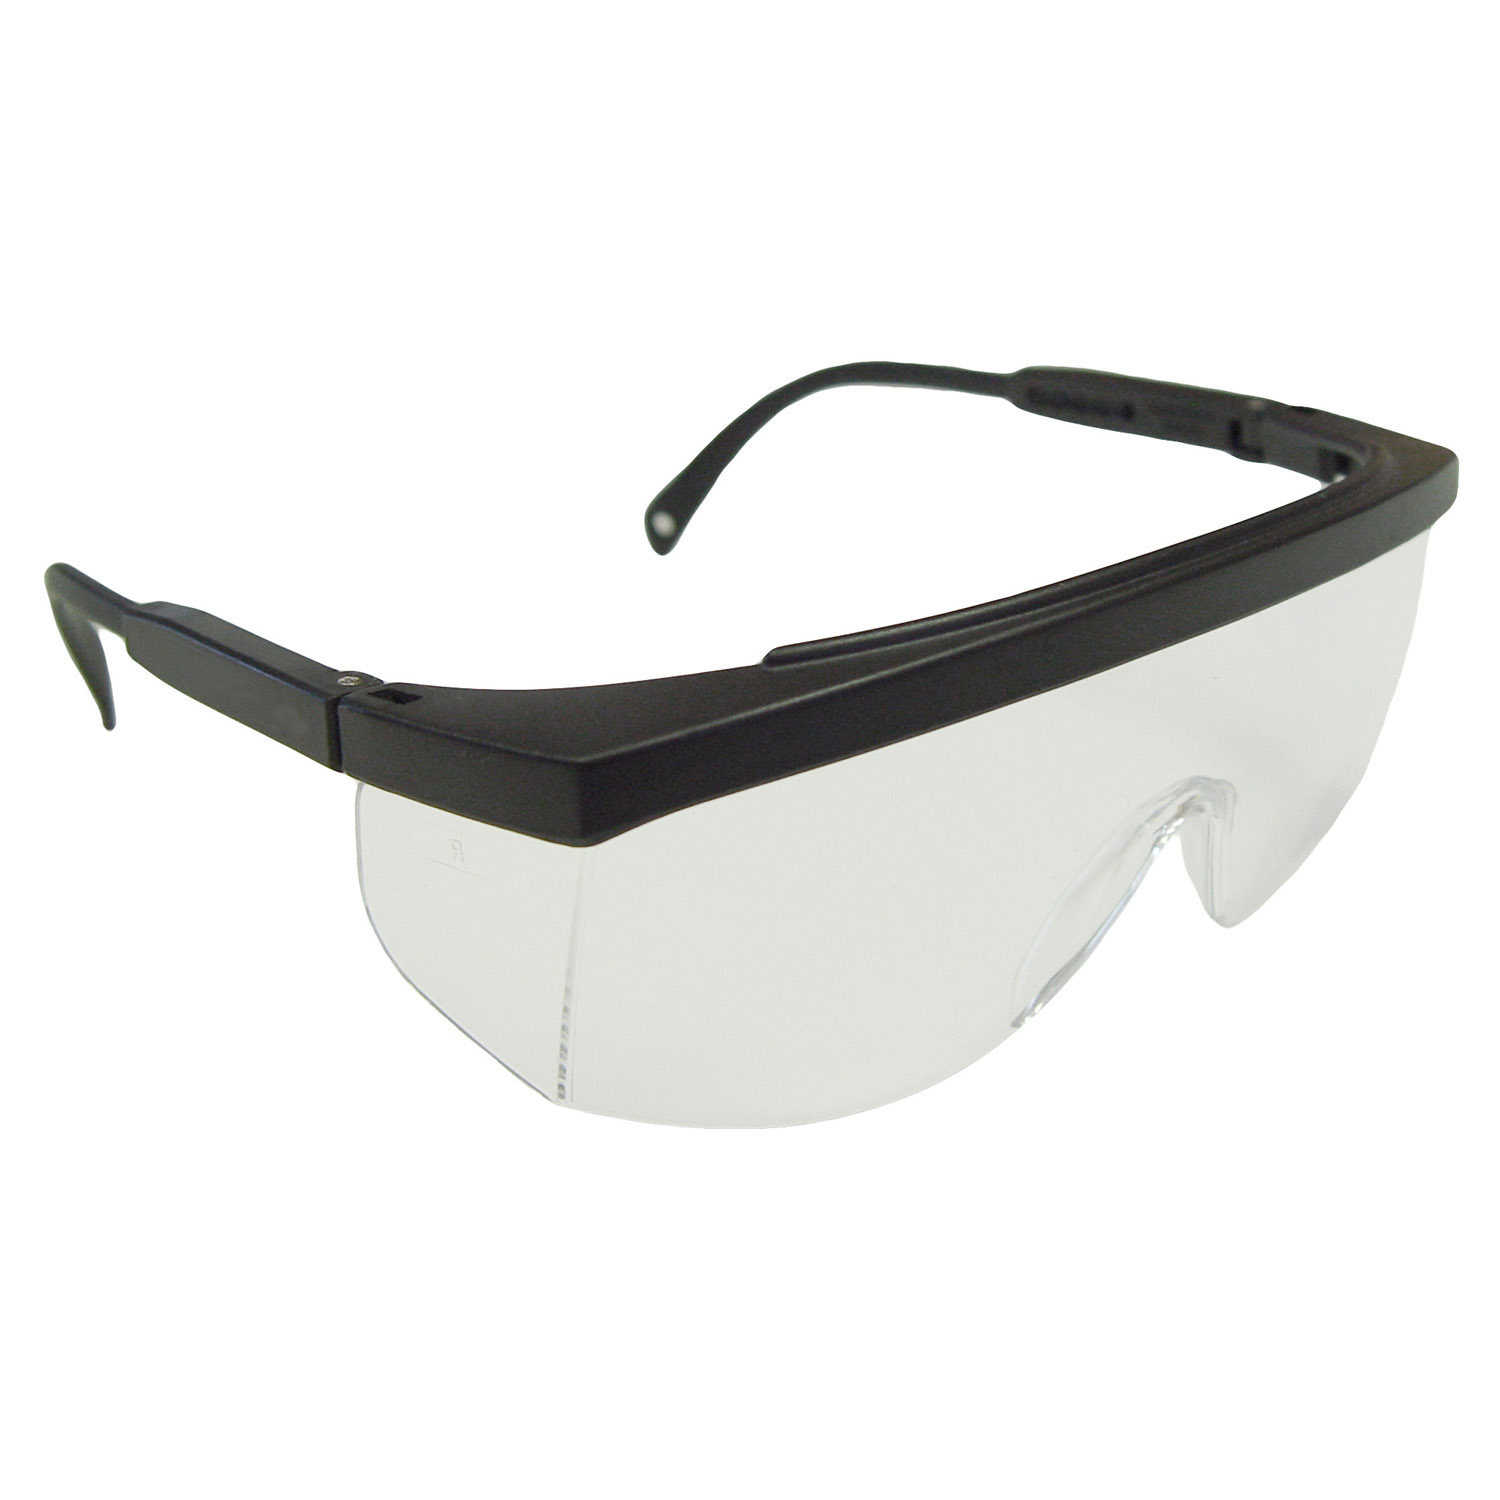 Galaxy™ Safety Eyewear - Black Frame - Clear Anti-Fog Lens